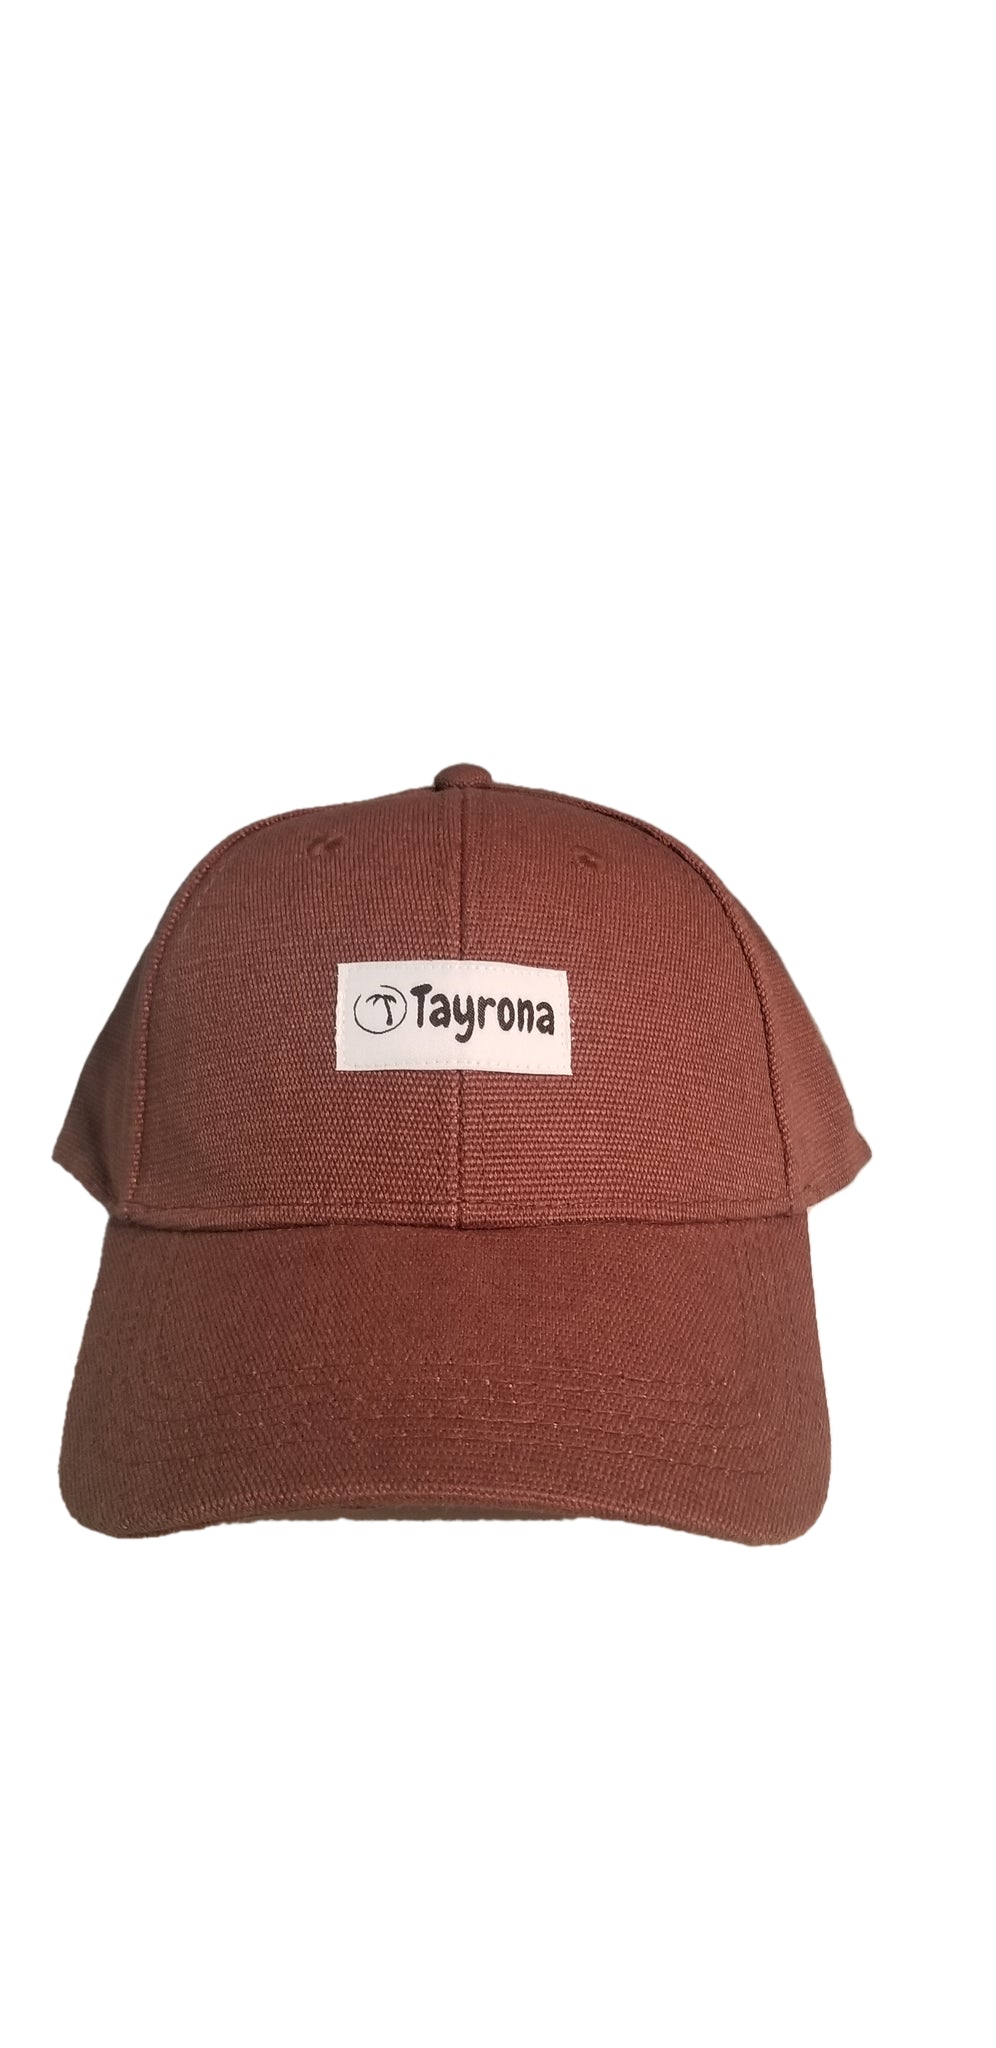 Tayrona Hemp Baseball Cap